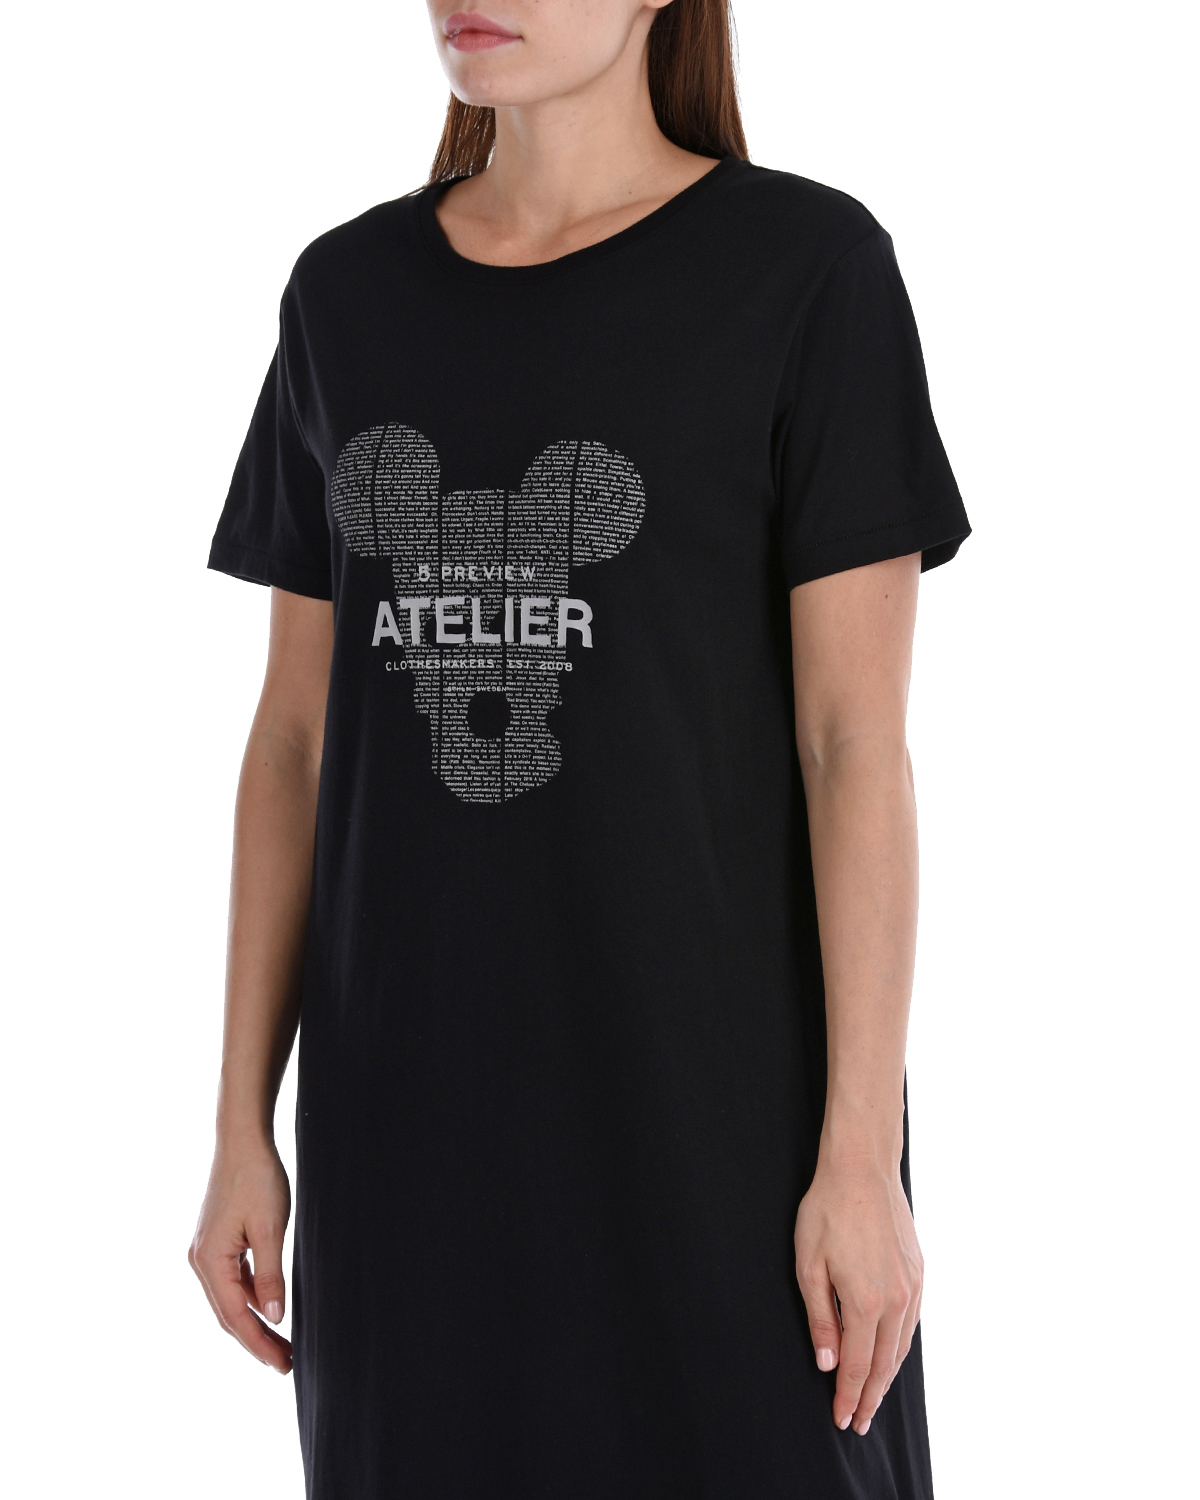 Платье-футболка с принтом "Atelier" 5 Preview, размер 40, цвет черный - фото 8